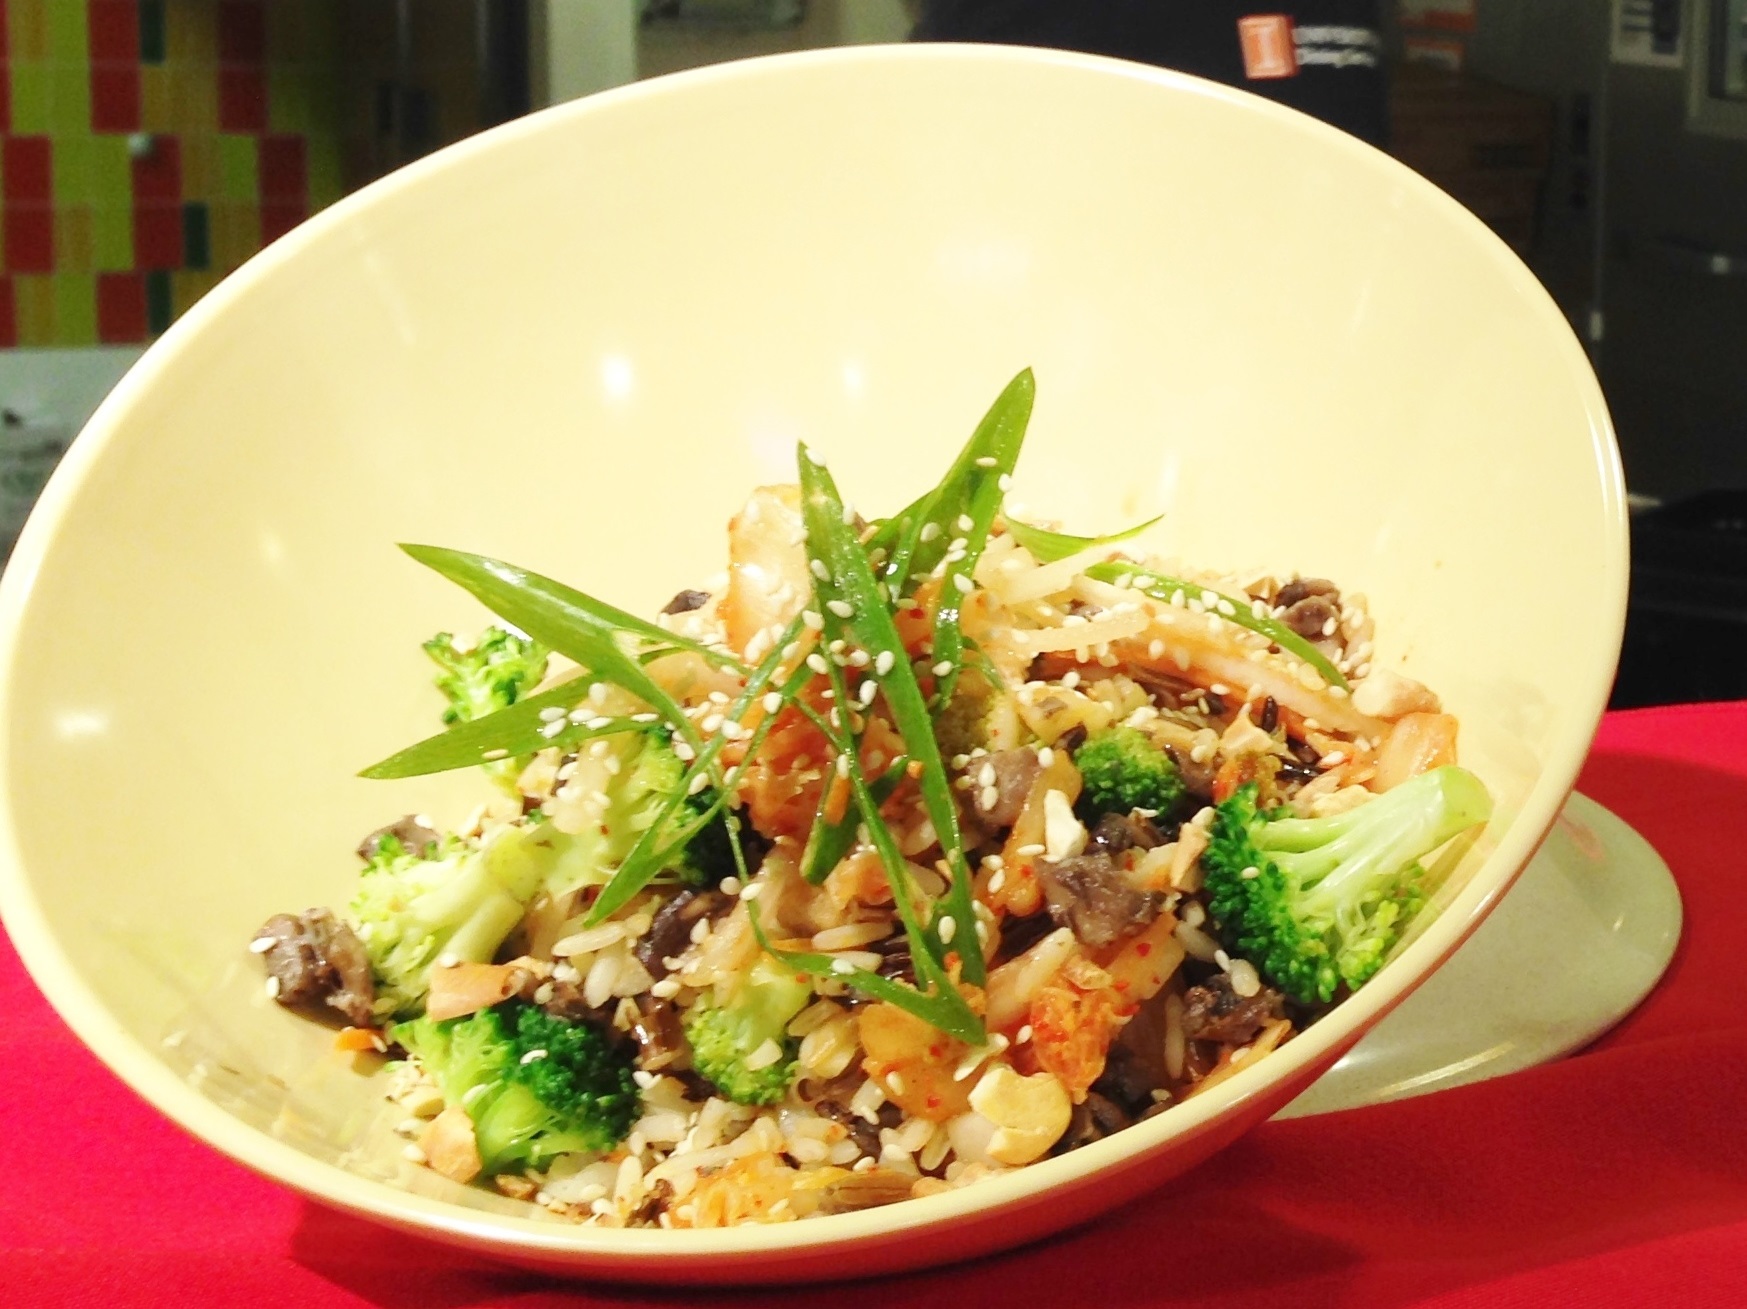 Kimchi Wild Rice with Broccoli & Cashew